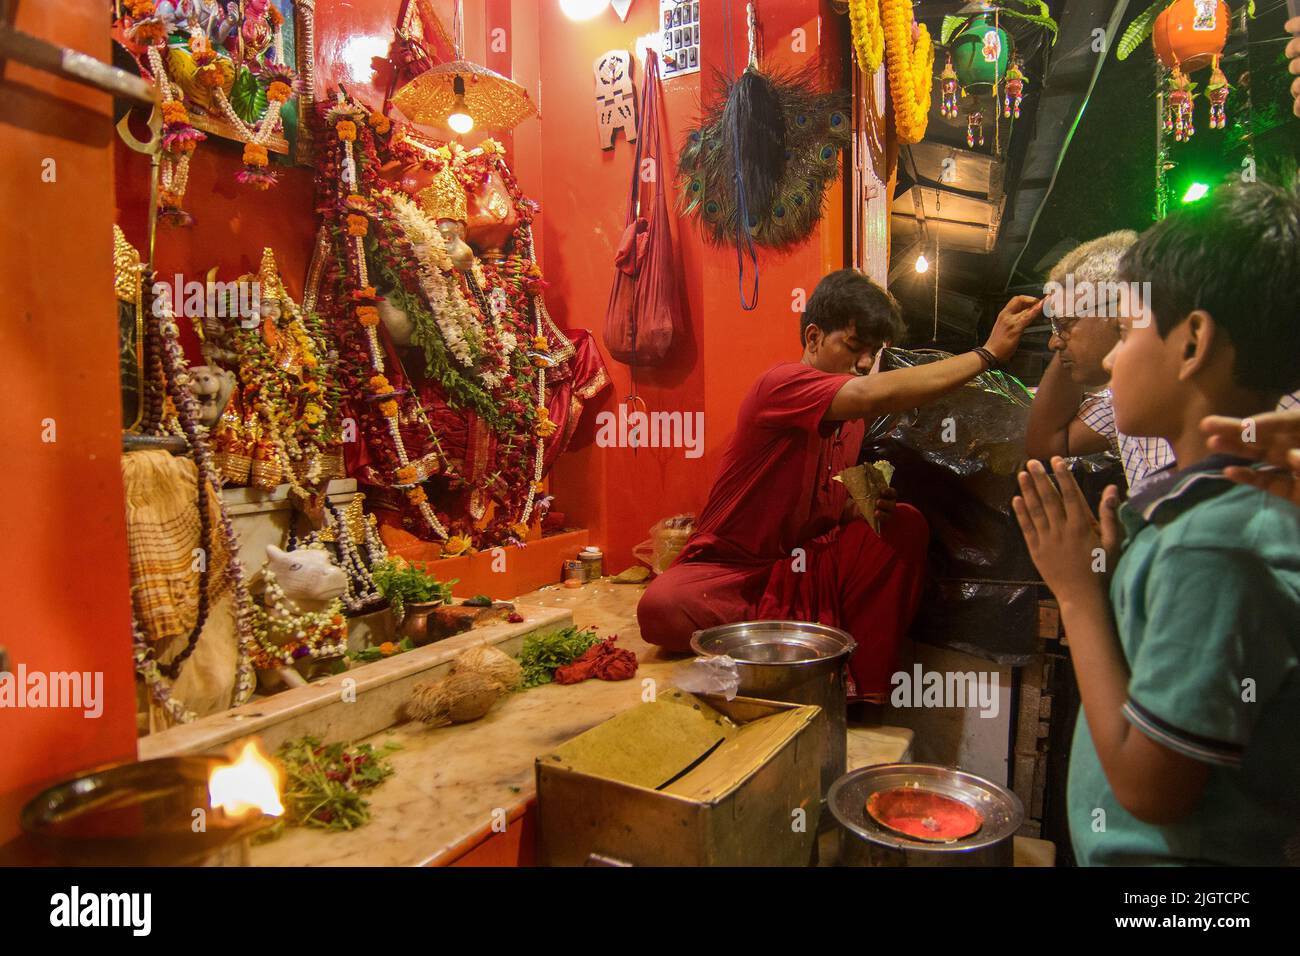 Kolkata, Bengale occidental, Inde - 5th juillet 2017 : prêtre hindou bénédiction des dévotés visitant le temple de Lord Hanuman ji à Kalighat. Célèbre temple de Kolkata. Banque D'Images